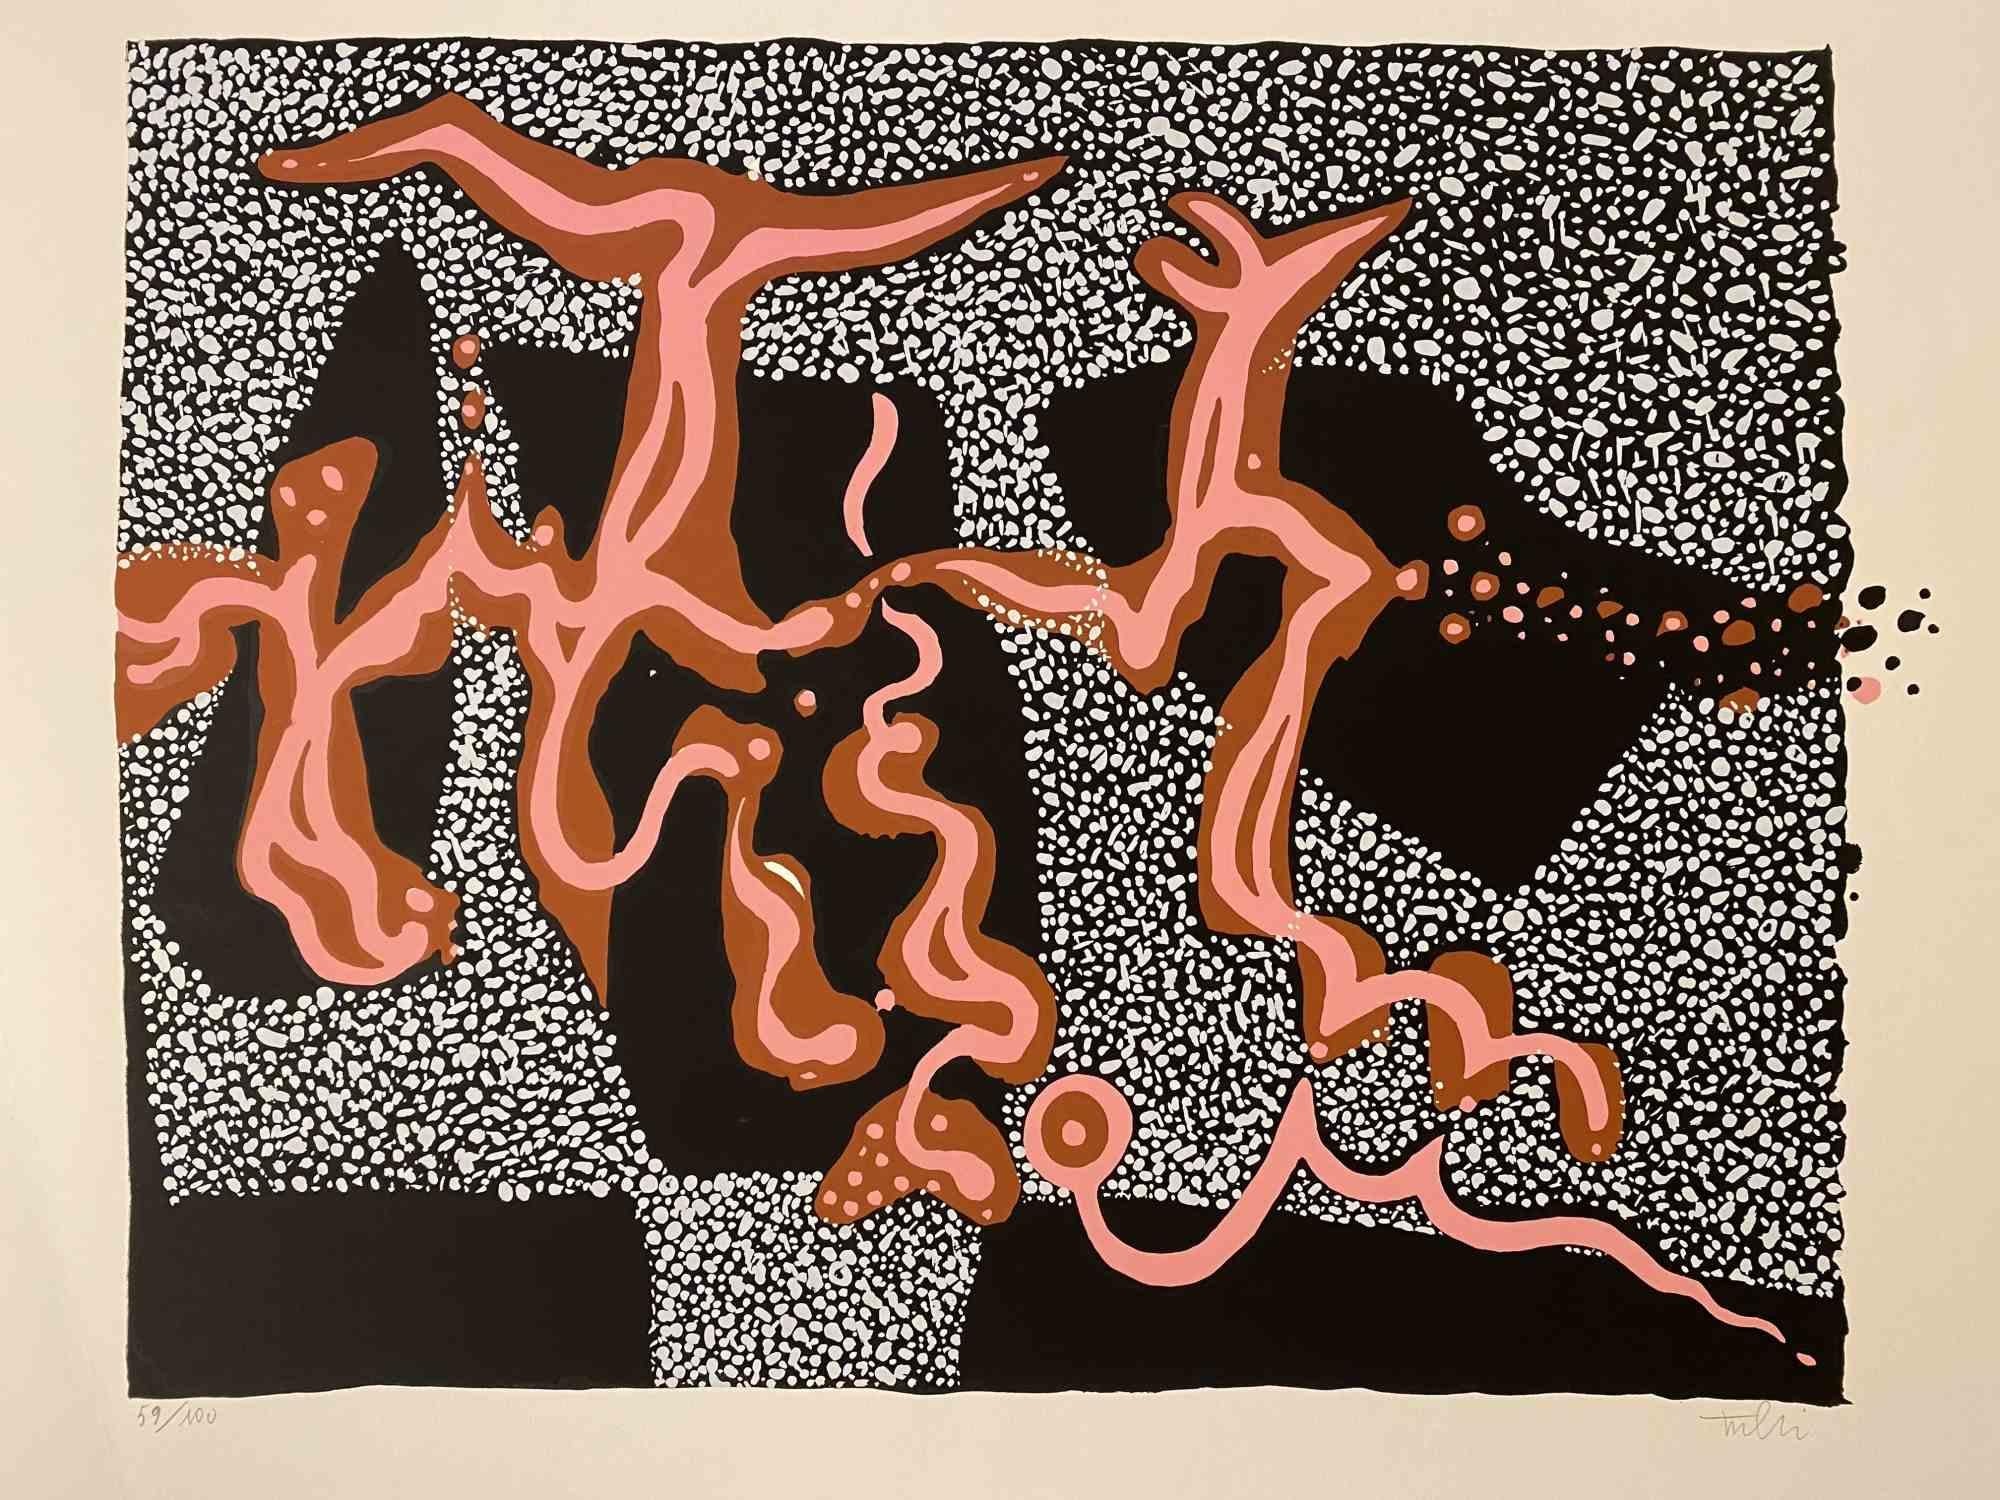 Composition carnavalesque est une sérigraphie colorée sur papier, réalisée en 1973 par l'artiste italien Wladimiro Tulli.

Signé à la main en bas à droite.

Numéroté, édition de 59/100.

Une belle œuvre d'art représentant une composition abstraite à